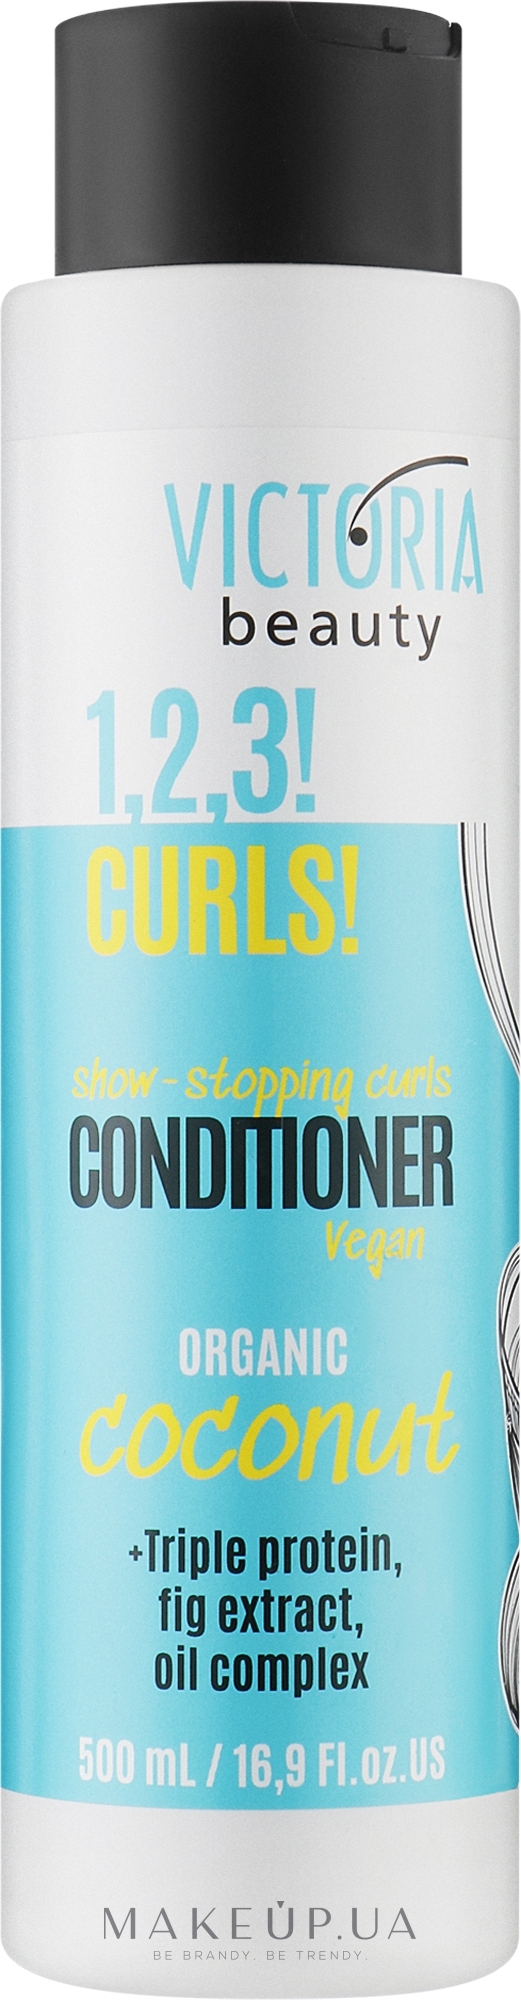 Кондиционер для кудрявых волос - Victoria Beauty 1,2,3! Curls! Conditioner — фото 500ml